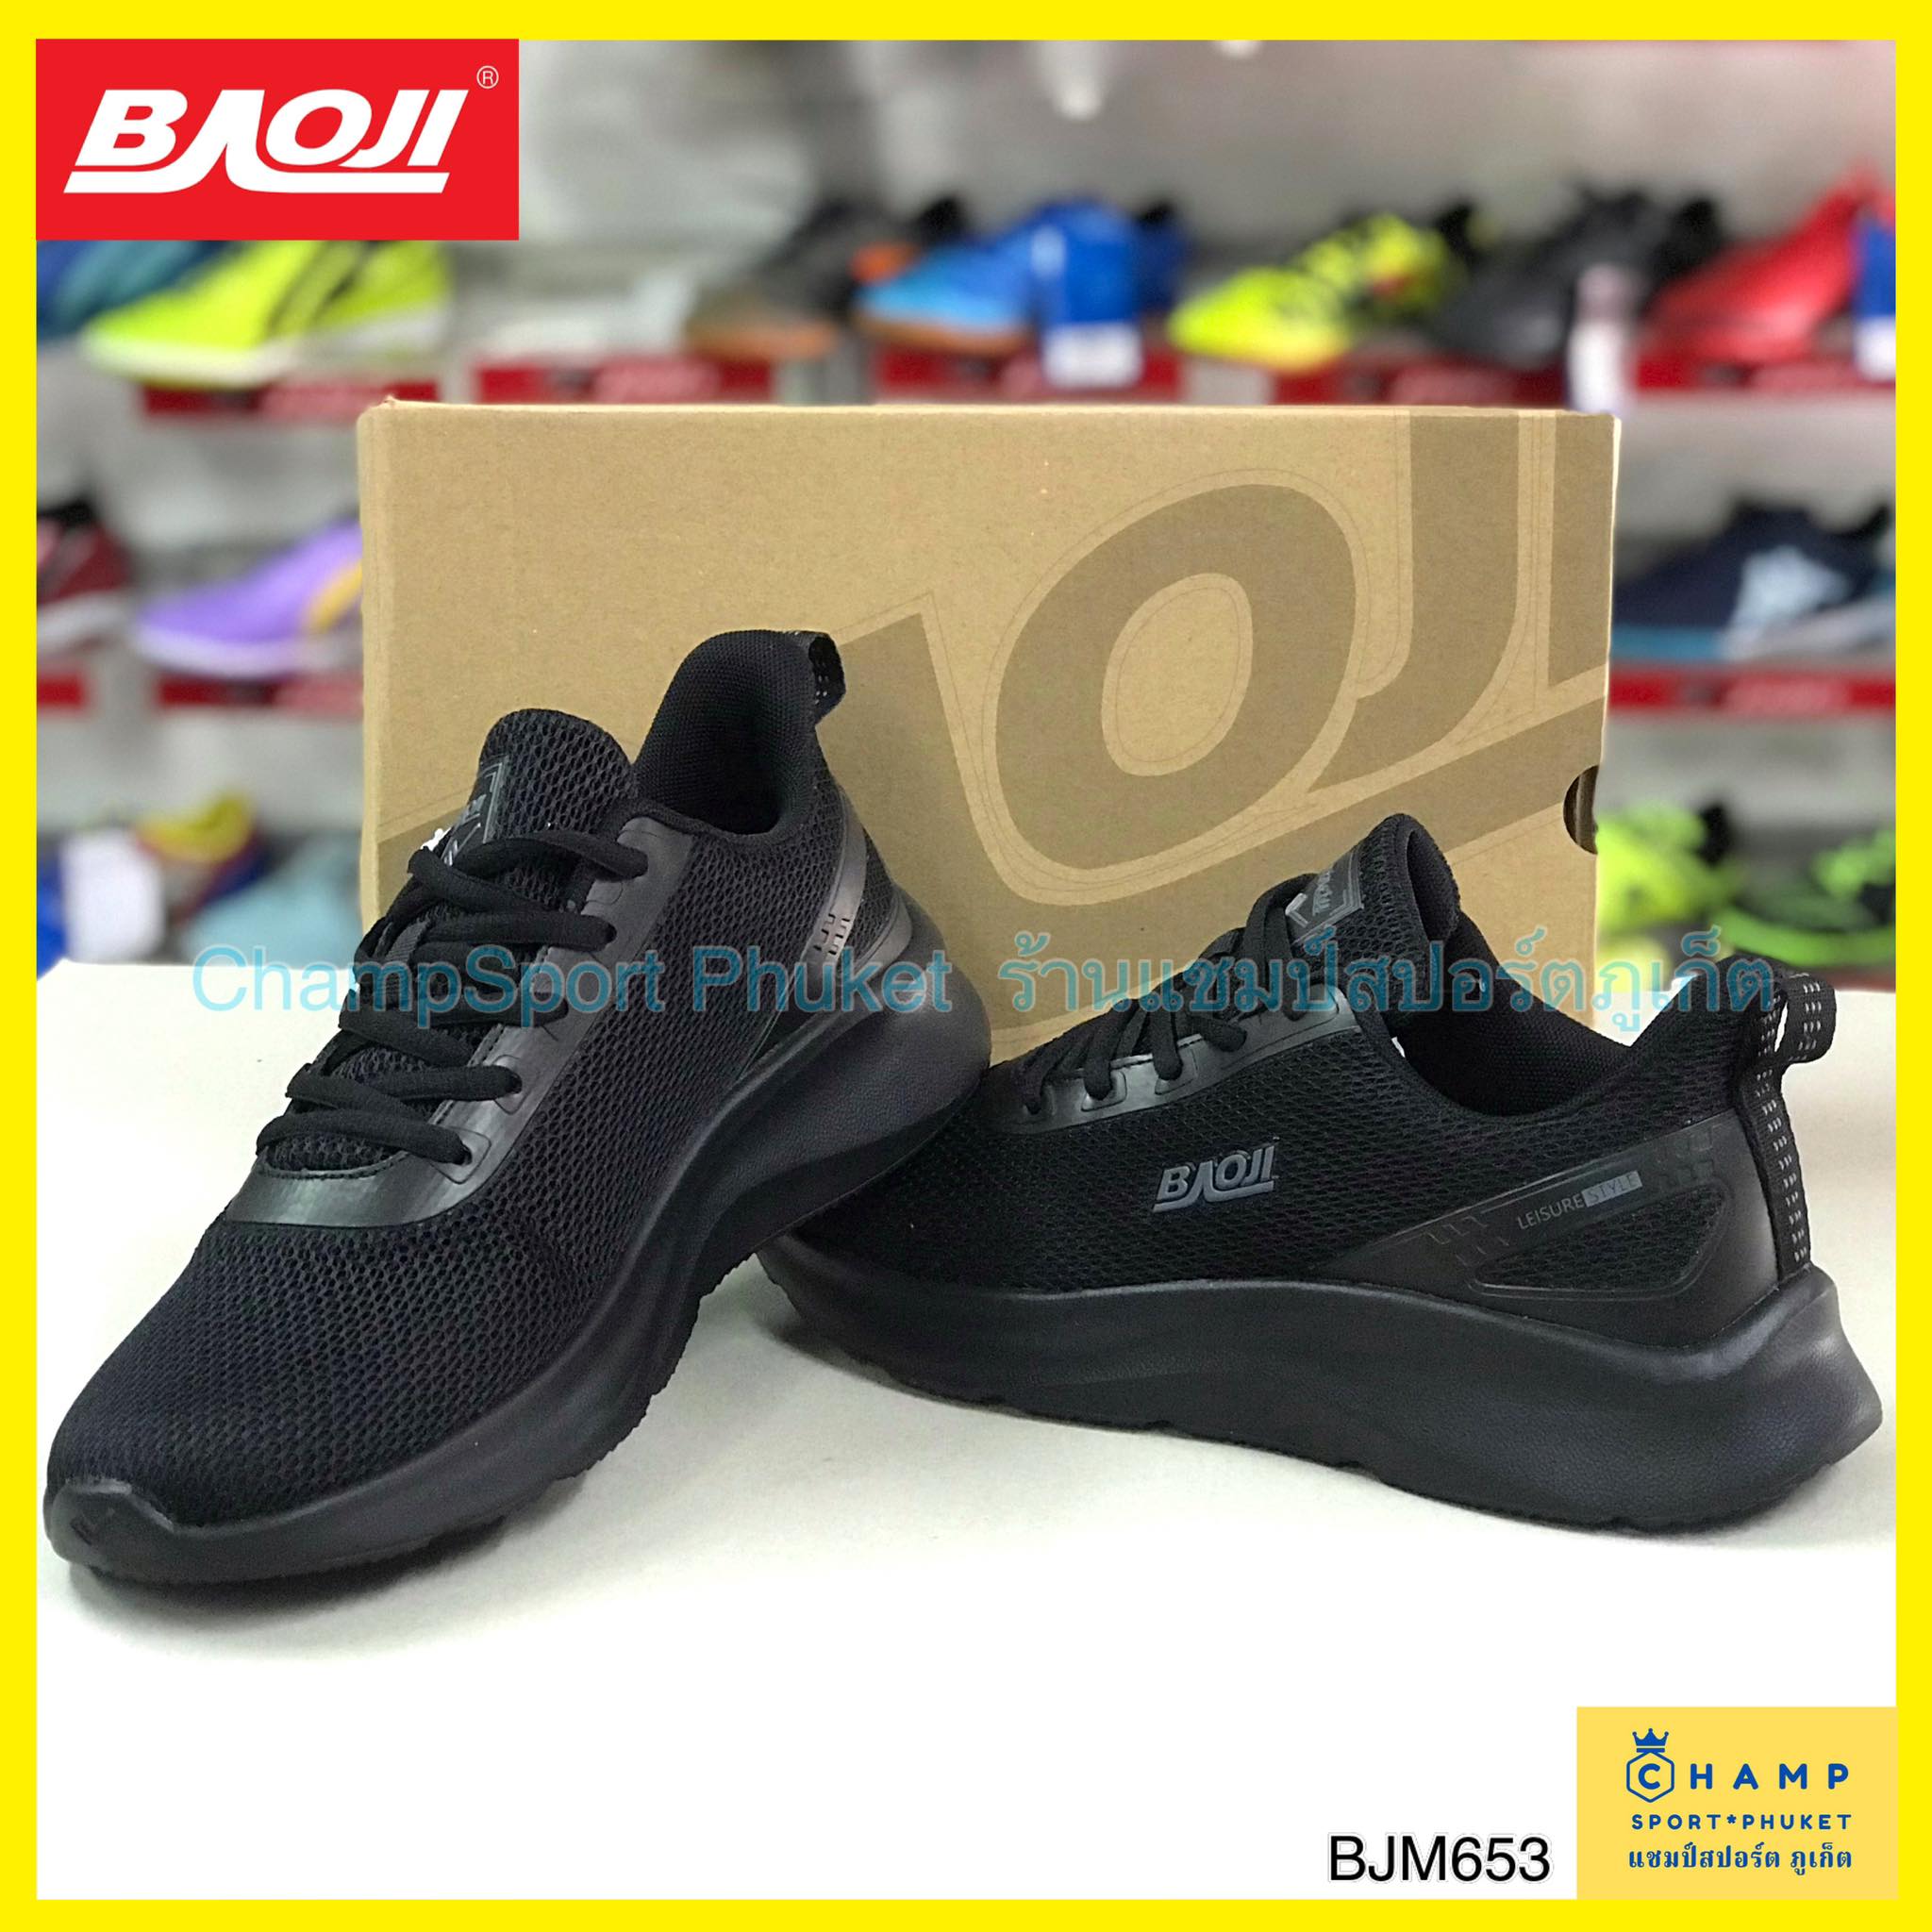 ลองดูภาพสินค้า รองเท้าผ้าใบ ผู้ชาย Baoji (ลิขสิทธ์แท้) รองเท้าใส่ลำลอง รองเท้าวิ่ง รองเท้าออกกำลังกาย รองเท้าใส่เล่นกีฬา